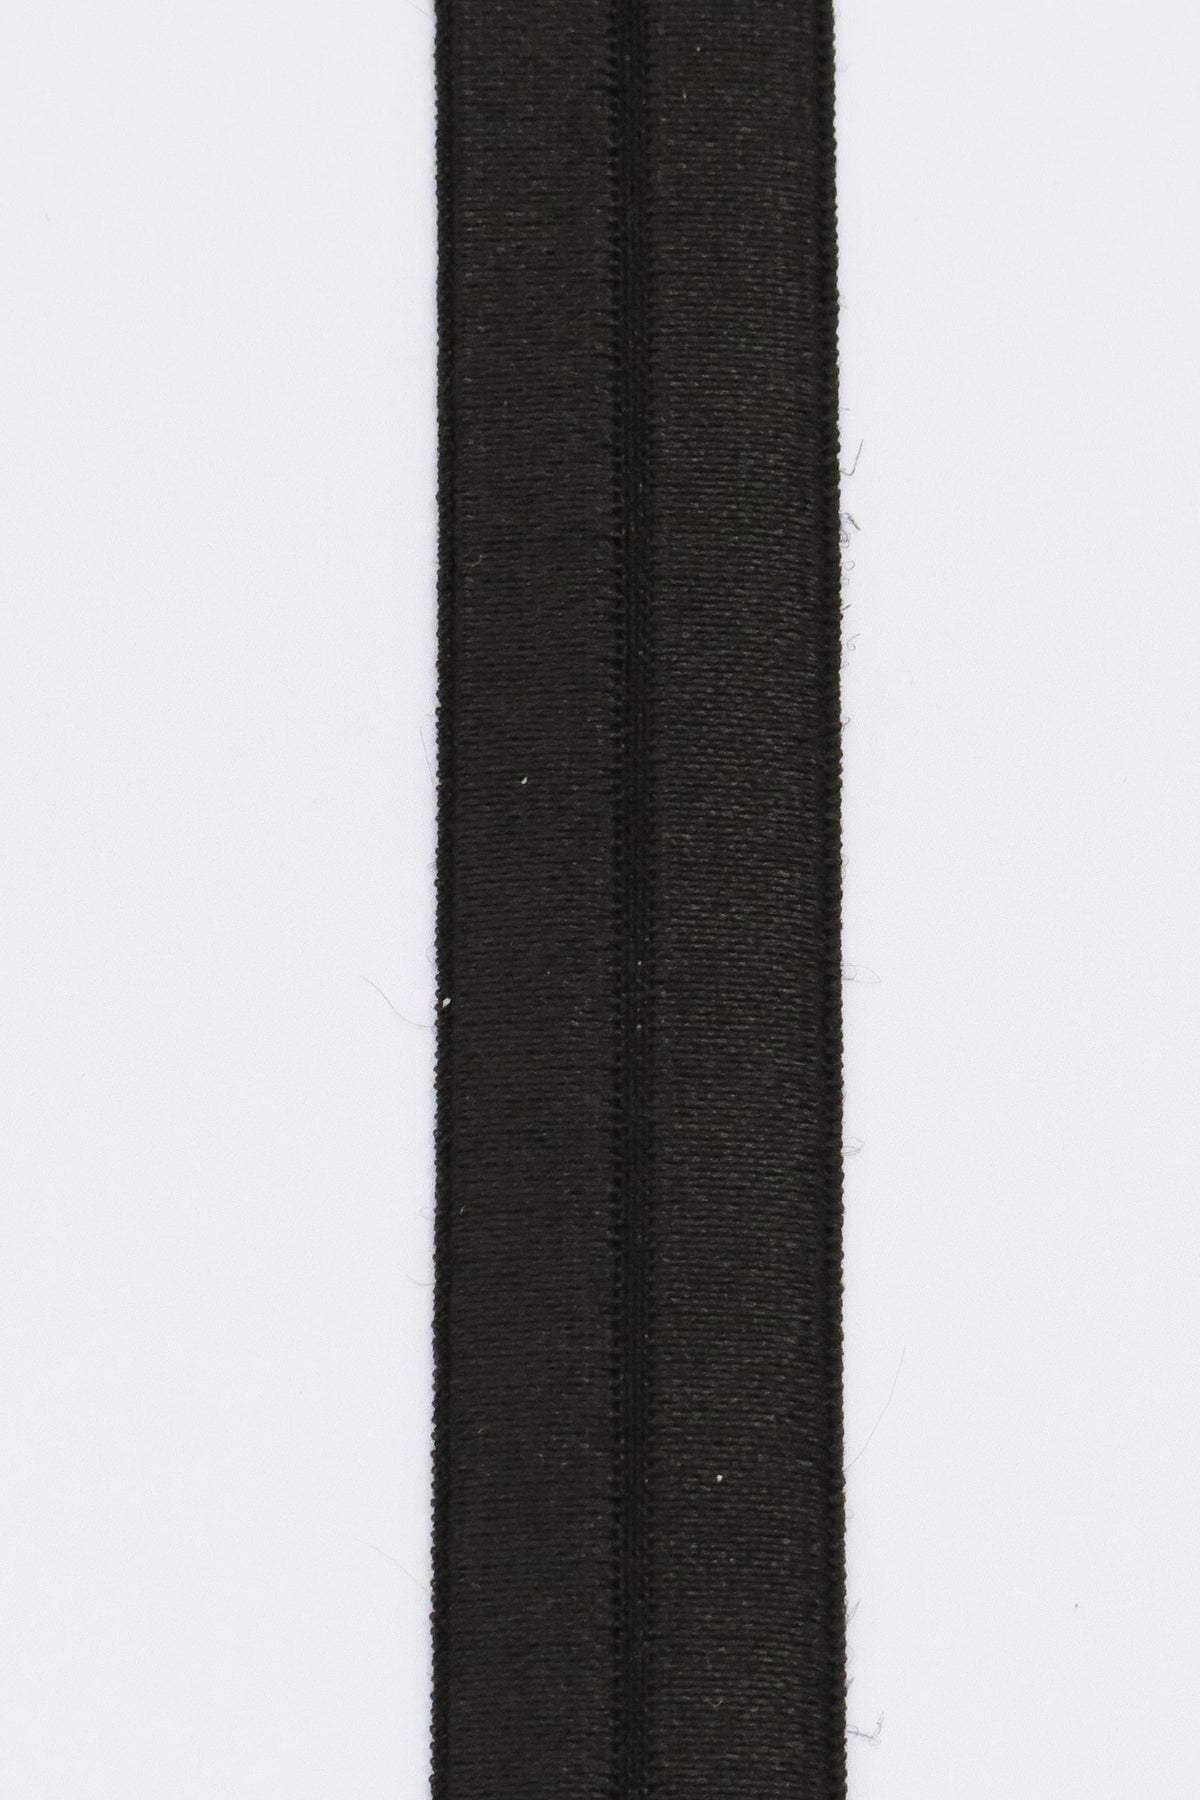 Foldeelastik 19mm svart (FOE)